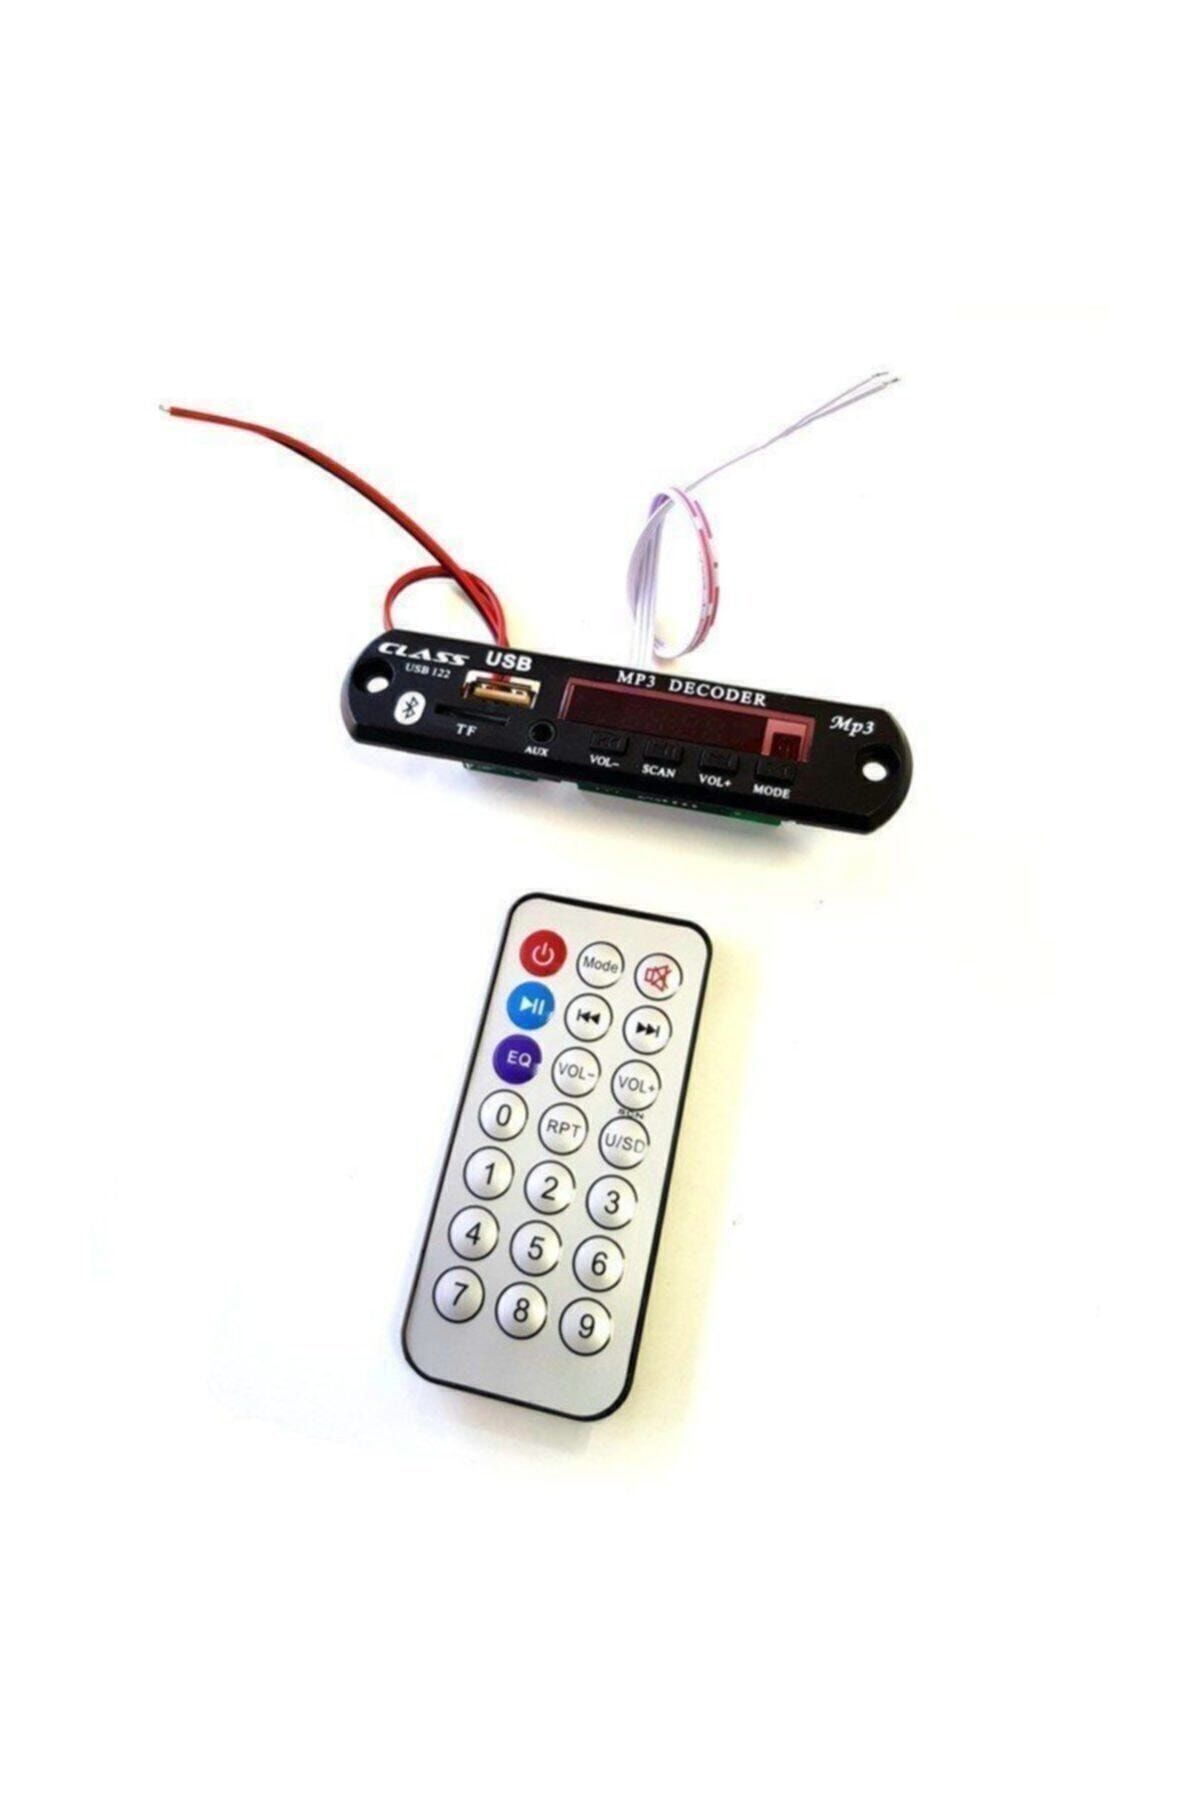 Swat Class Usb123 Oto Bluetooth Aux Çevirici Kit Konuşma Özellikli Mikrofonlu